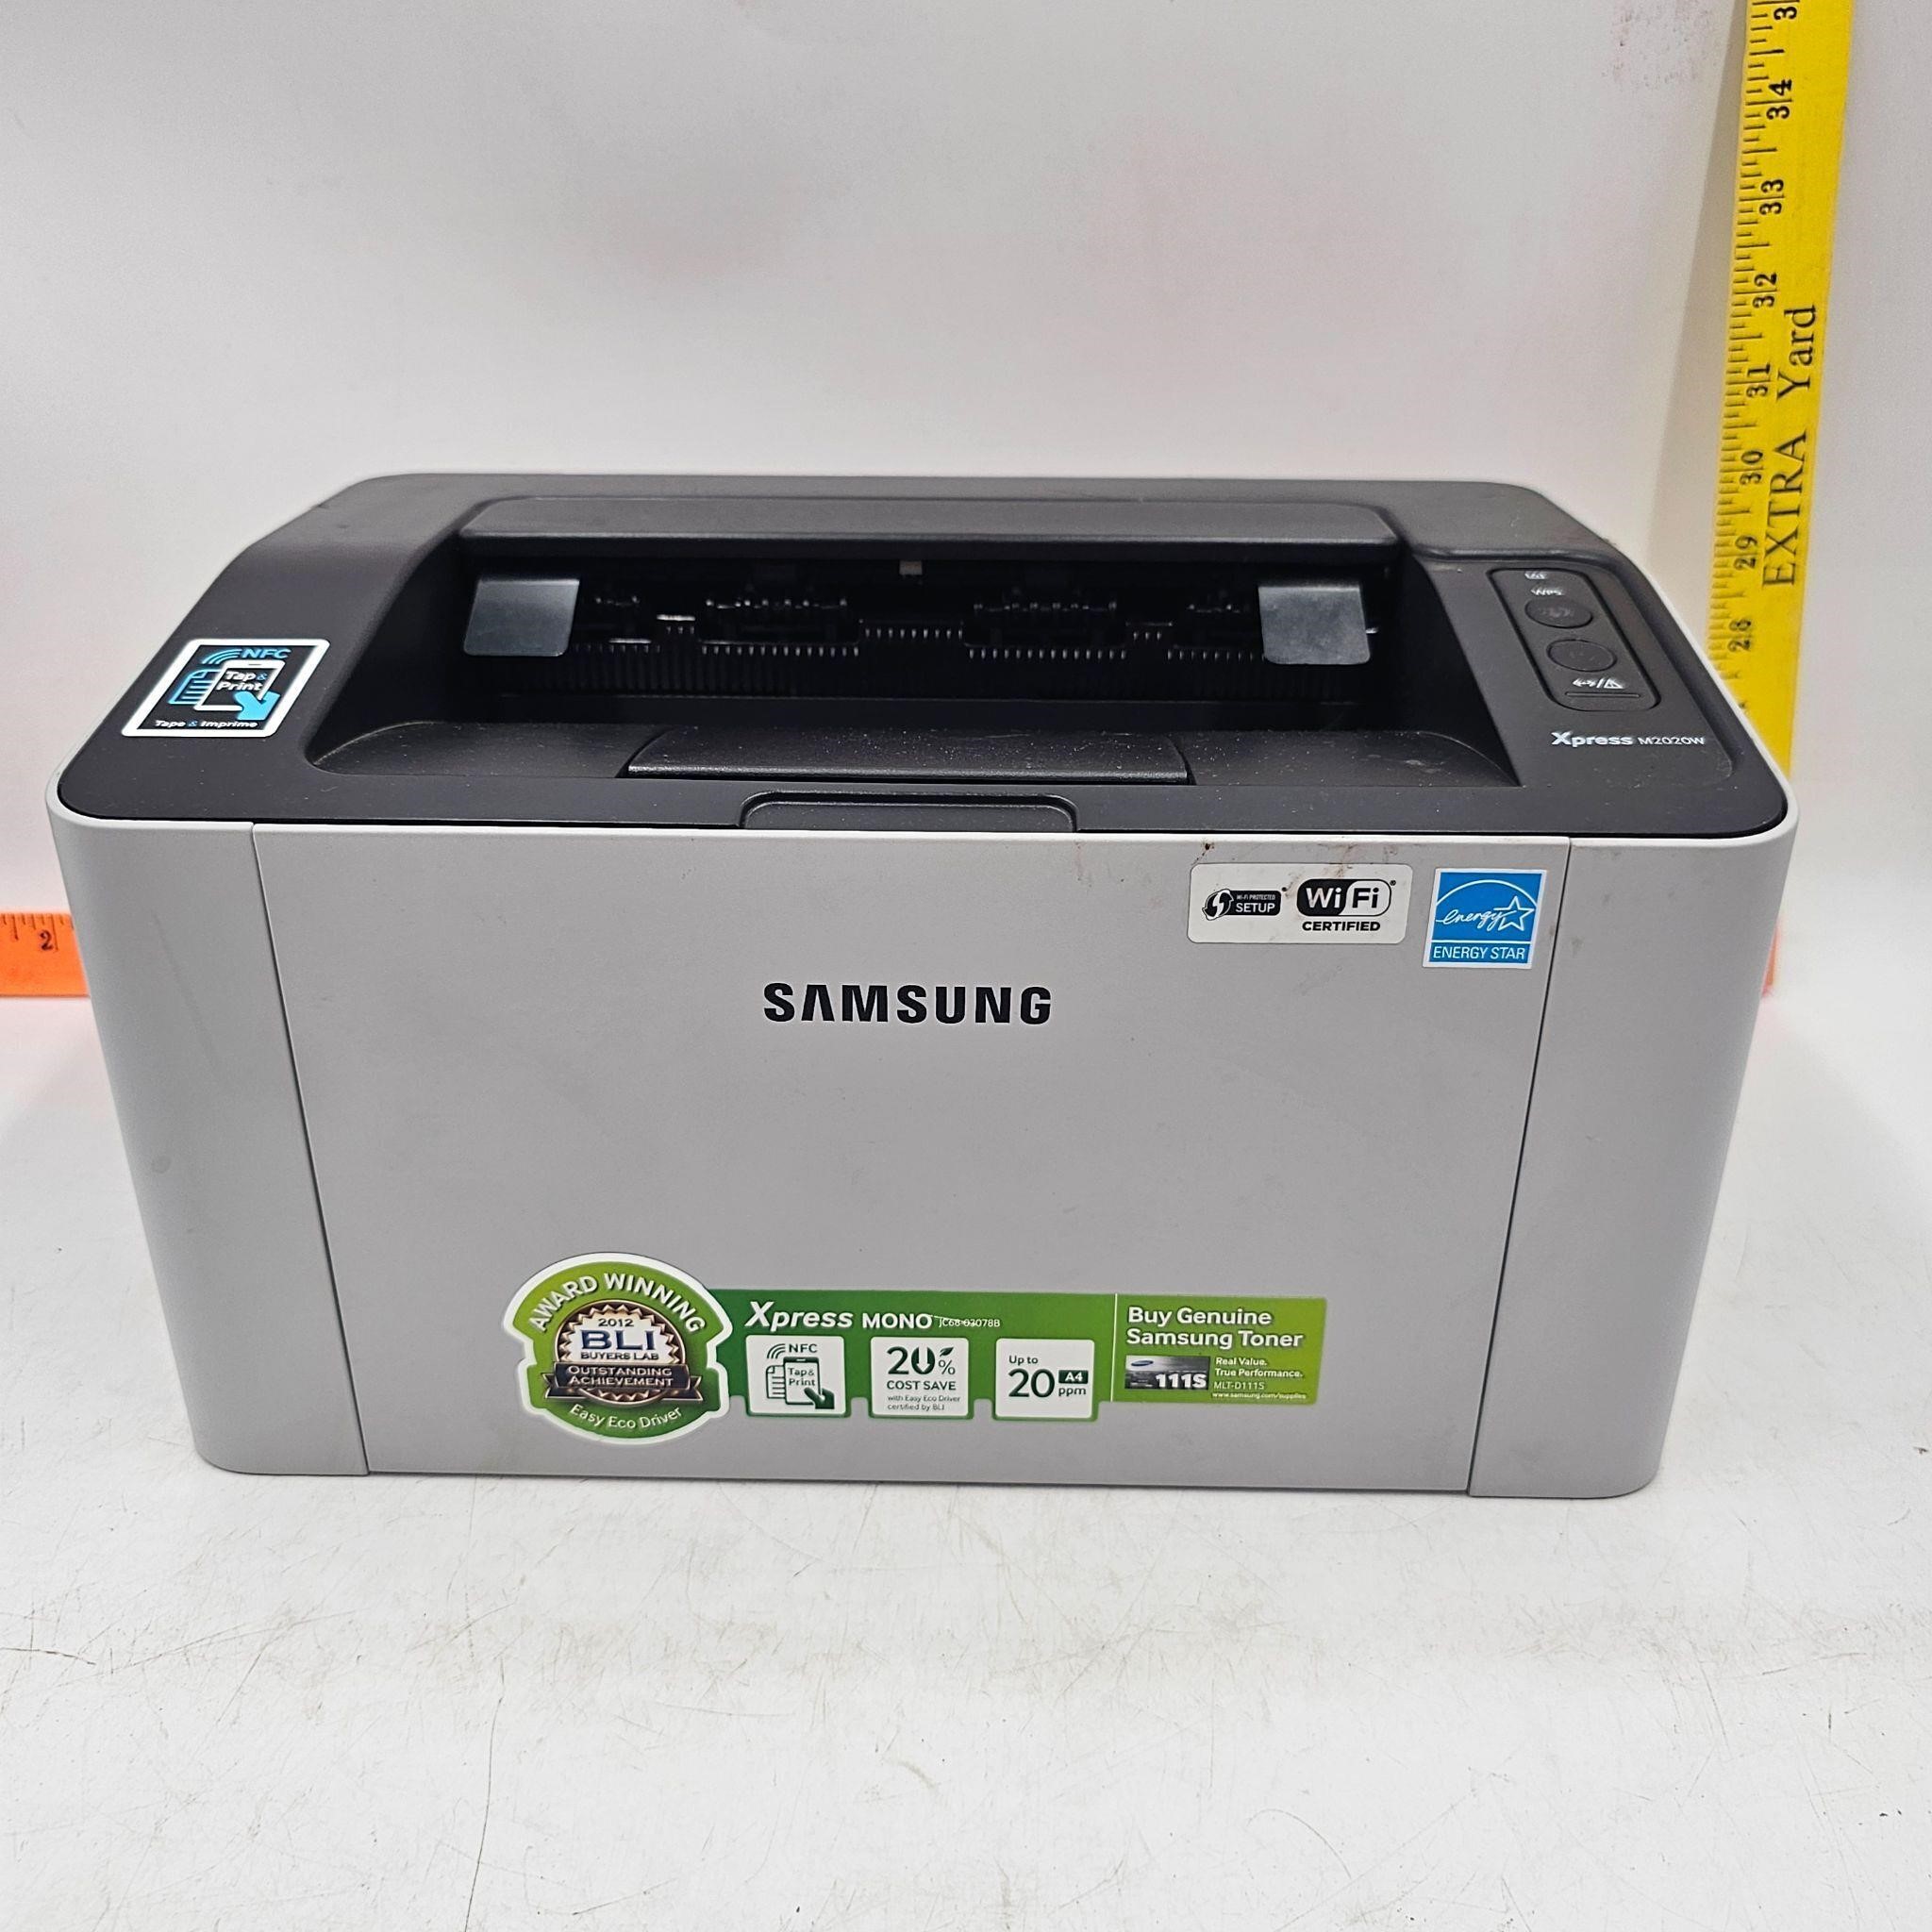 Samsung Xpress Mono JC68-03078B Printer